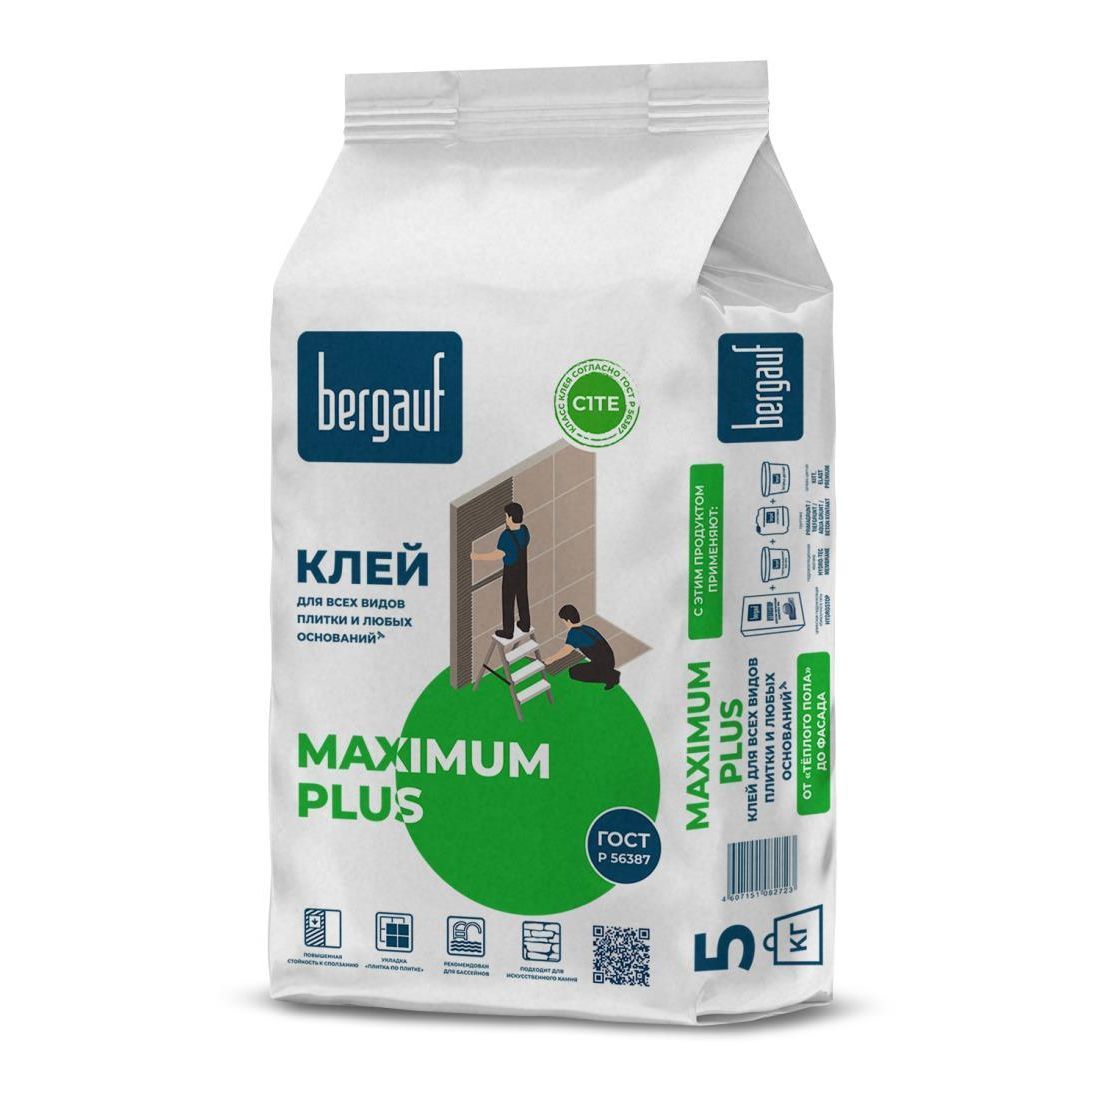 Клей Bergauf Maximum Plus для всех видов плитки и любых оснований 5 кг